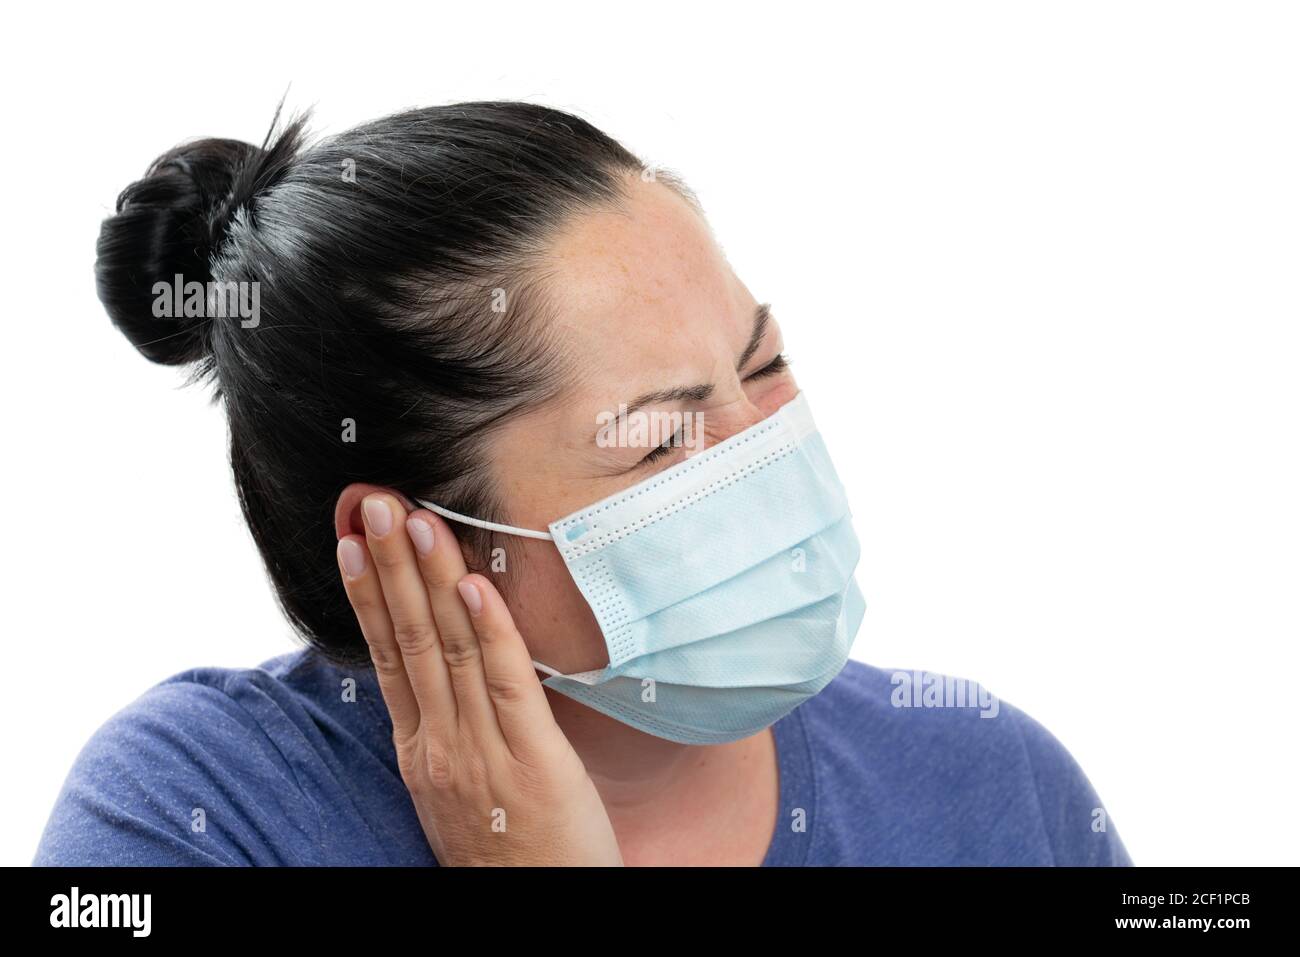 Modèle femelle adulte touchant l'oreille avec la main comme douleur covid19  grippe concept de symptôme de grippe portant un masque chirurgical jetable  pour protéger de contamination Photo Stock - Alamy